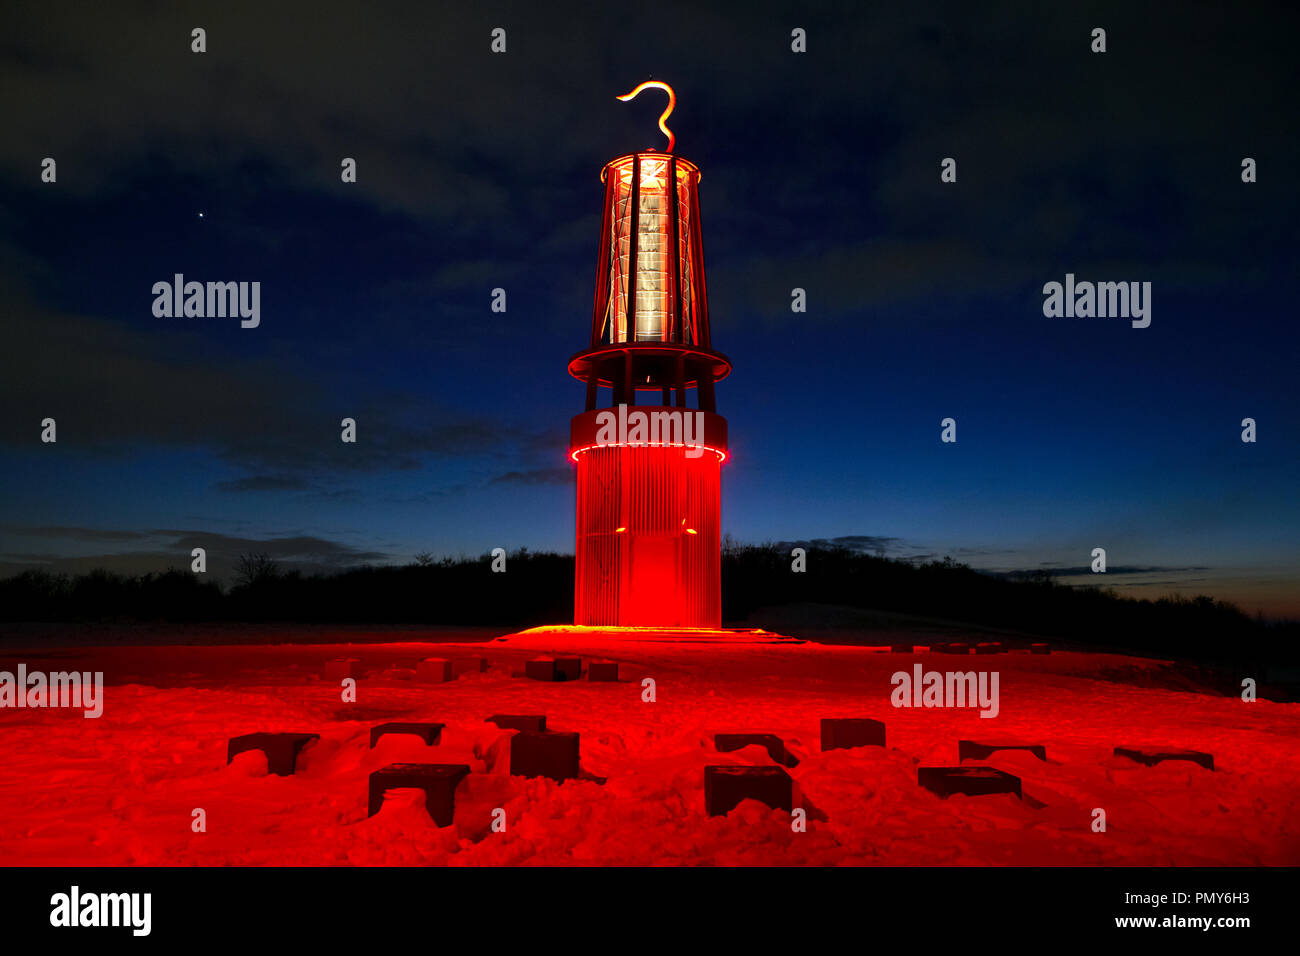 Im September 2007, die Lampe der übergroßen Miner "Geleucht' wurde errichtet als Wahrzeichen von der kunst Professor Otto Piene auf der Halde Rheinpreußen in Moers. Die Schnee-bedeckten Hang des Heap ist eingehüllt in rotes Licht durch zahlreiche Scheinwerfer. Stockfoto